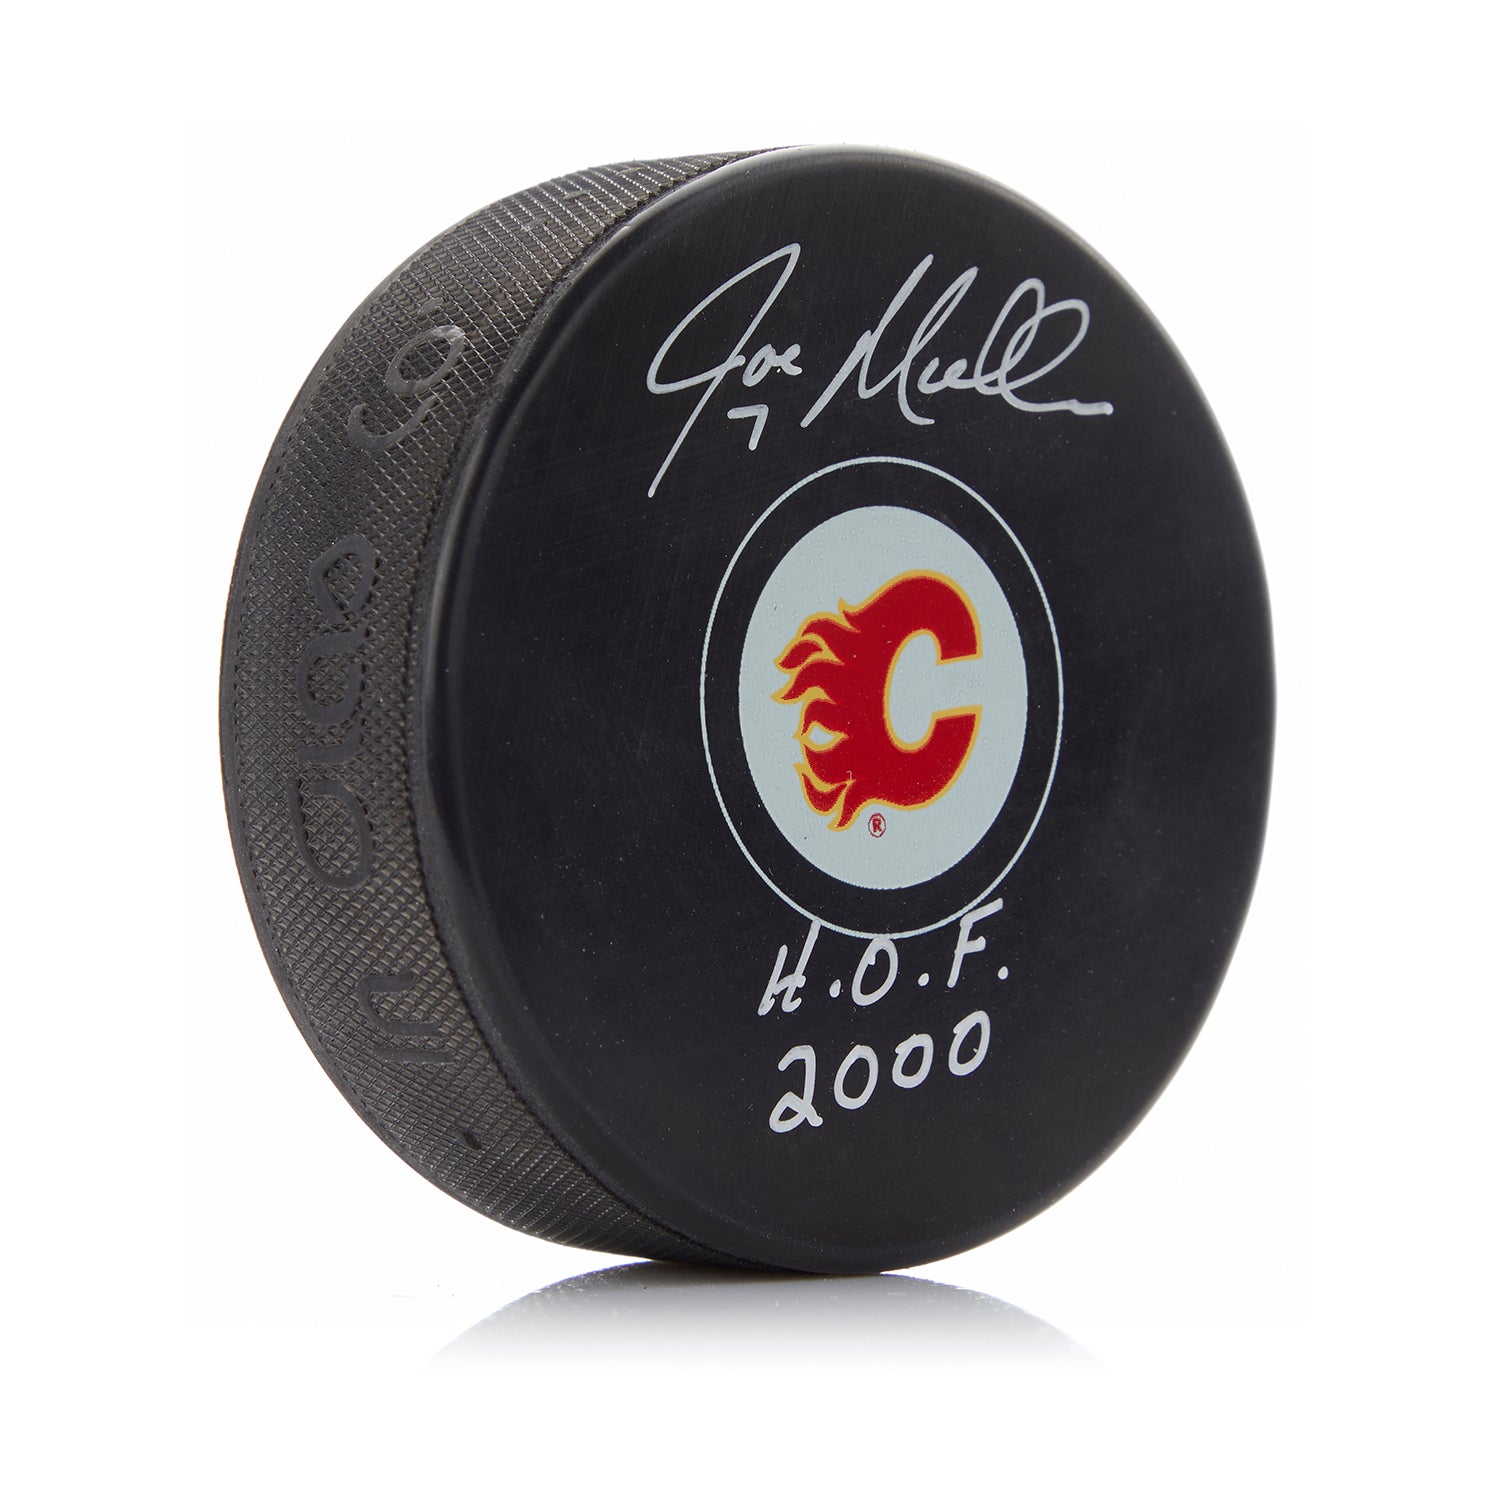 Joe Mullen Signed Calgary Flames Hockey Puck with HOF Note